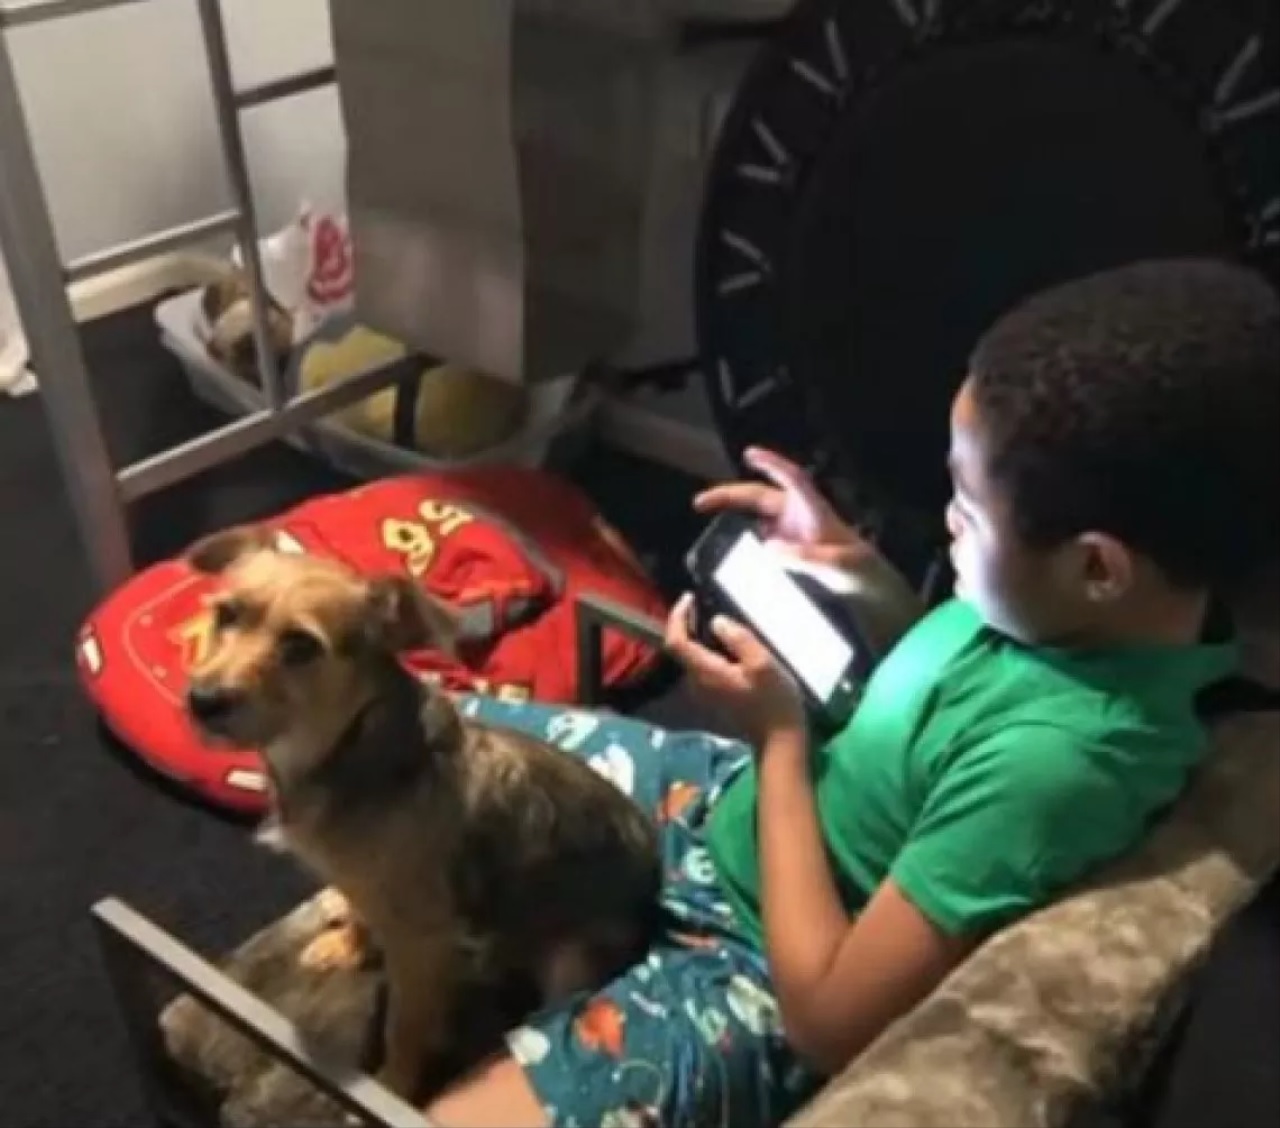 Bambino gioca con il cane